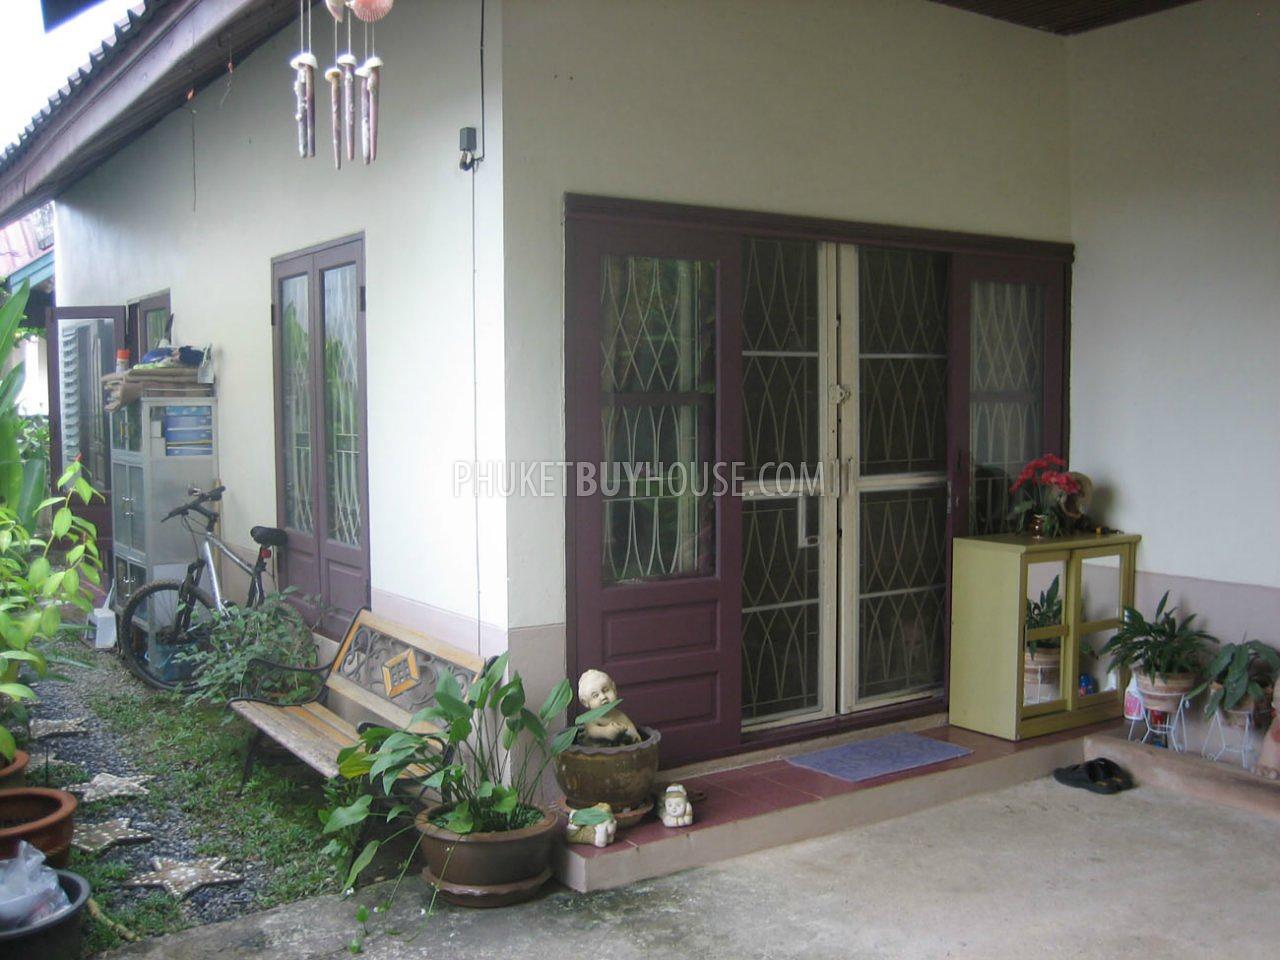 TAL3924: Single house near Laguna Phuket. Photo #1